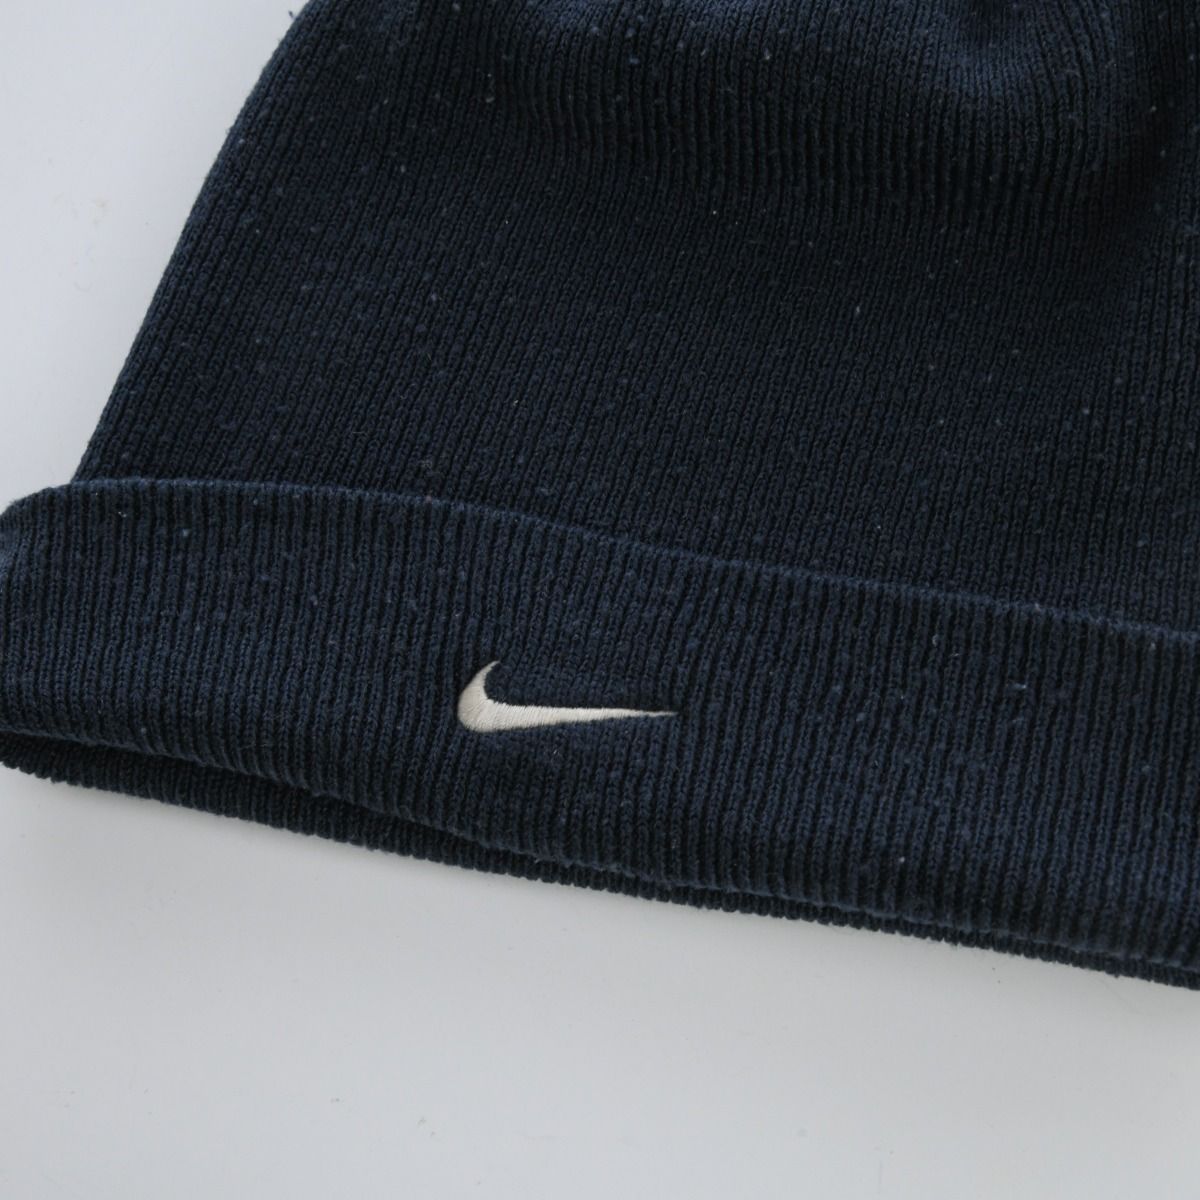 Nike Early 2000s Beanie Hat